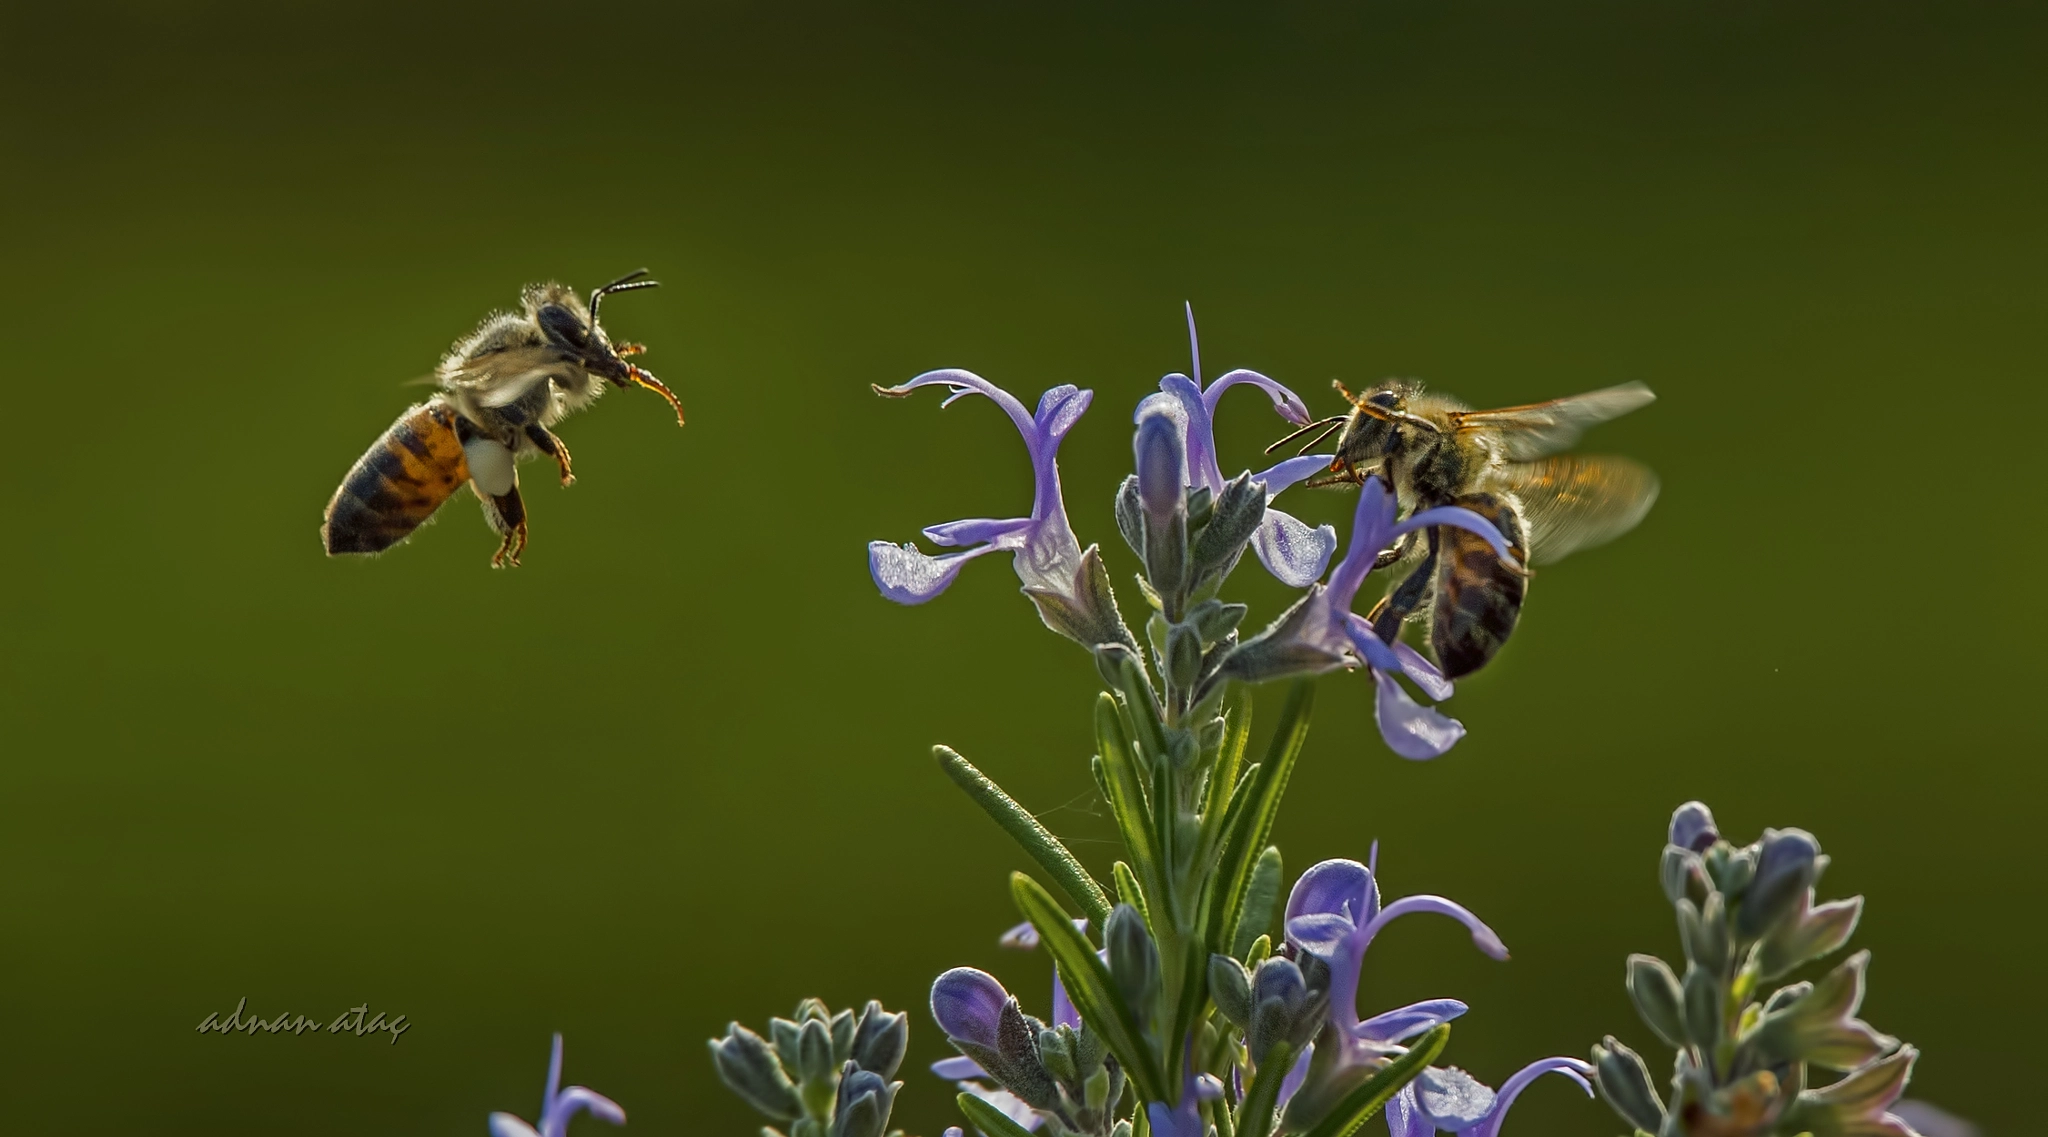 Nikon D4 + Sigma 50-500mm F4.5-6.3 DG OS HSM sample photo. Bal arısı (apis mellifica) ve biberiye çiçeği (rosmarinus officinalis) photography